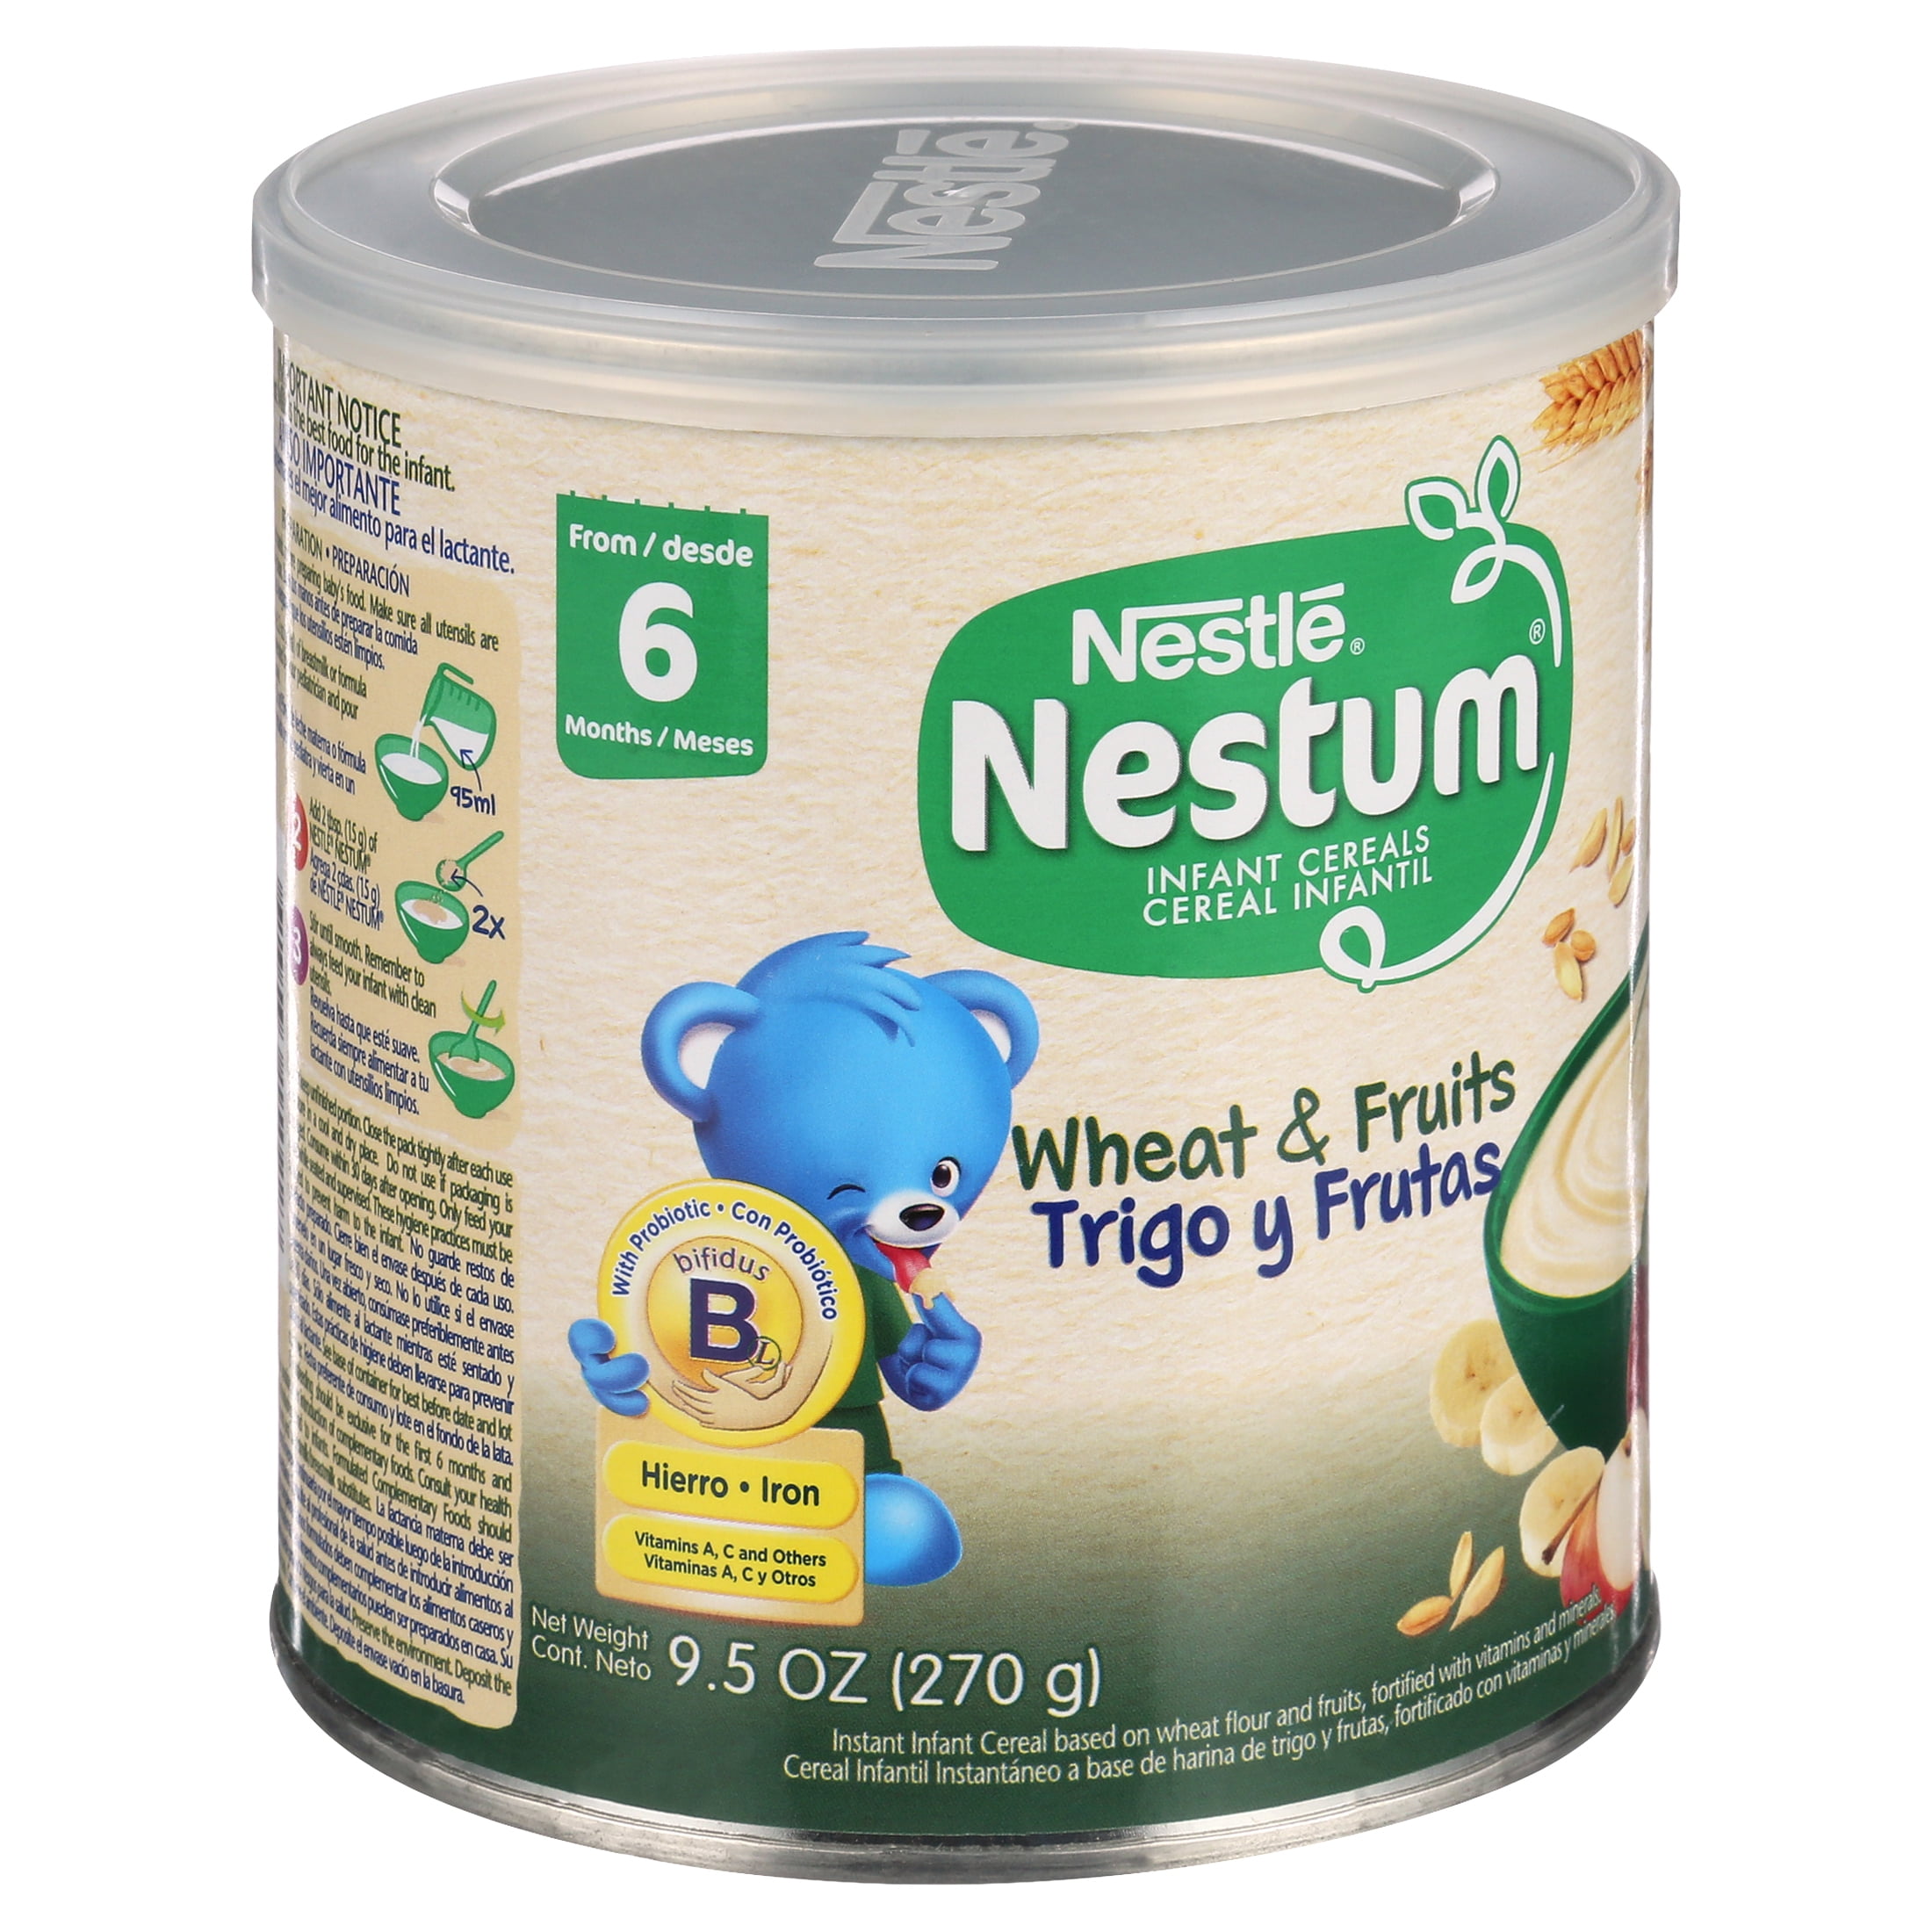 Cereal Infantil NESTUM ®